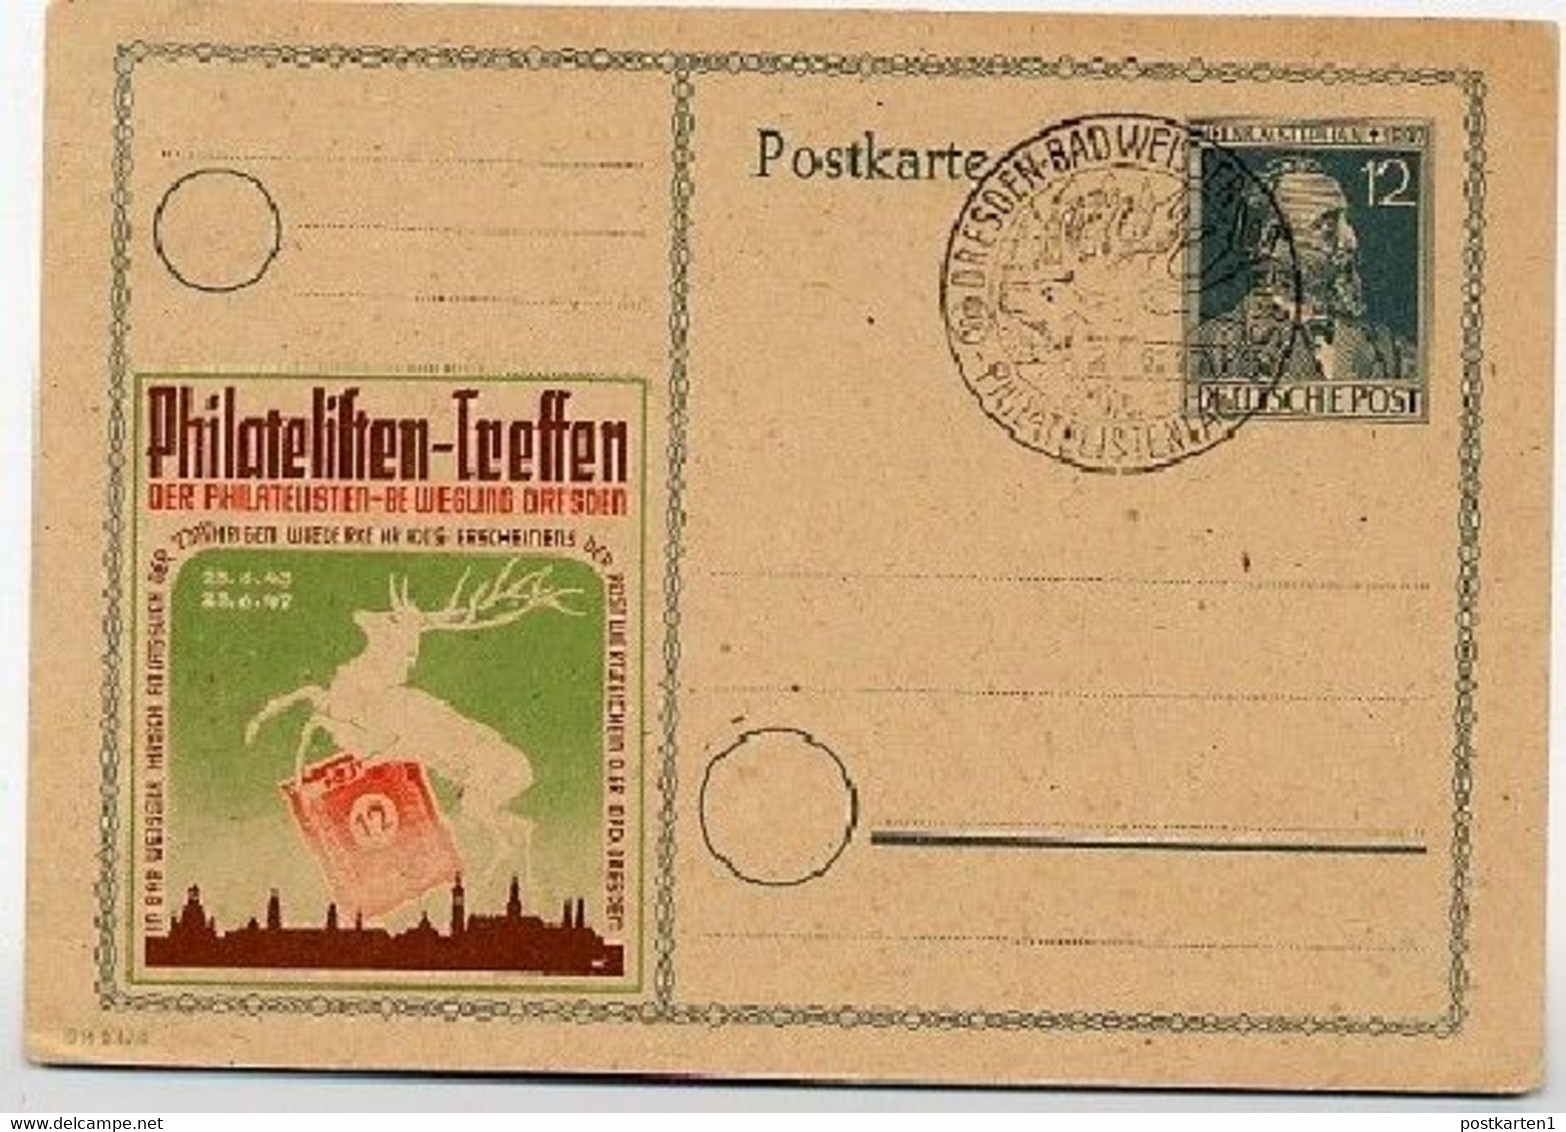 P965 ZC Philatelistenbewegung DRESDEN Sost. 1947 - Postal  Stationery